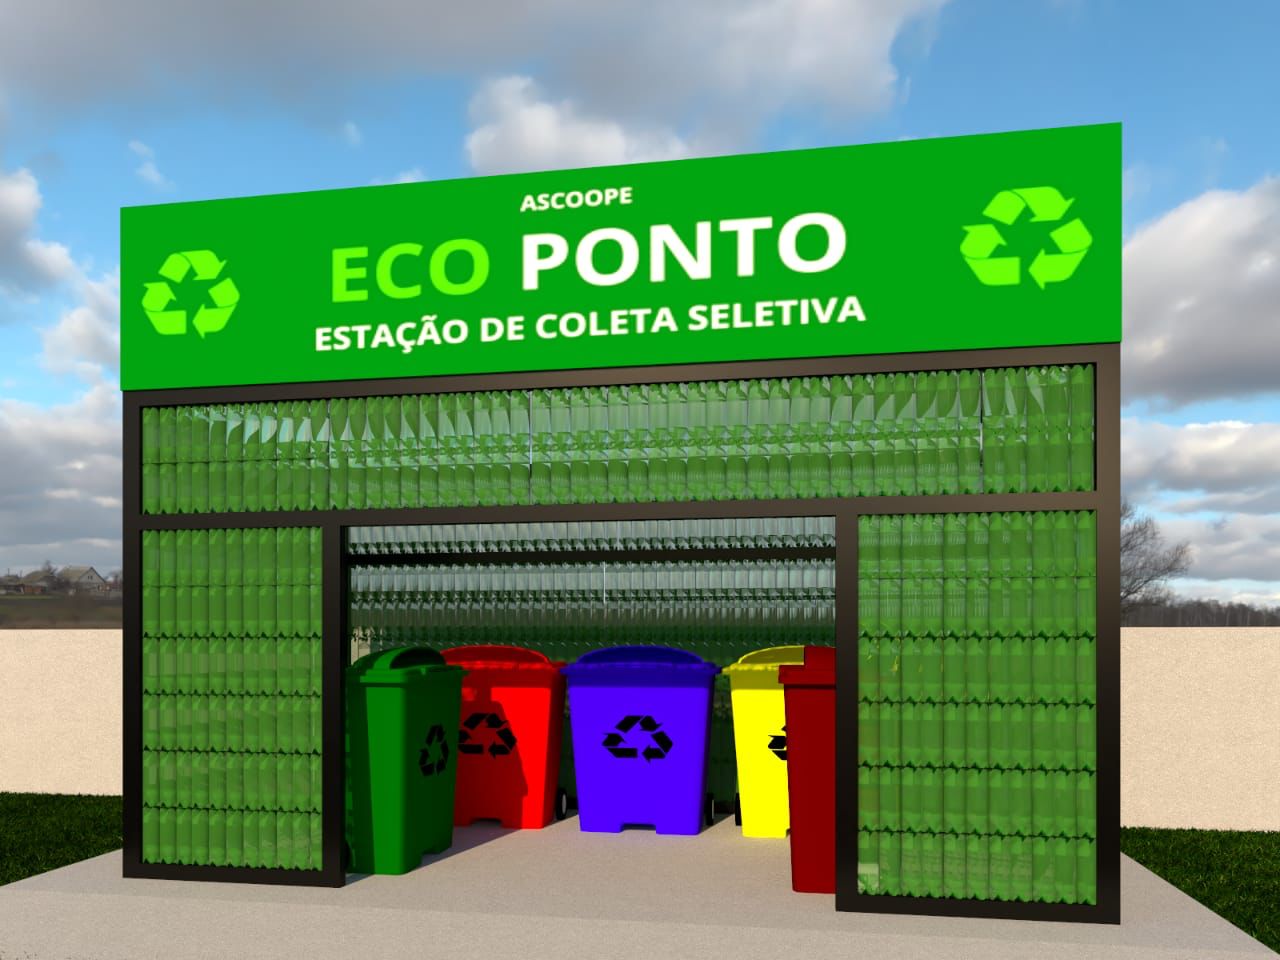 Ecoponto (Imagem fornecida pela turma de Saneamento Subsequente 2021-2)